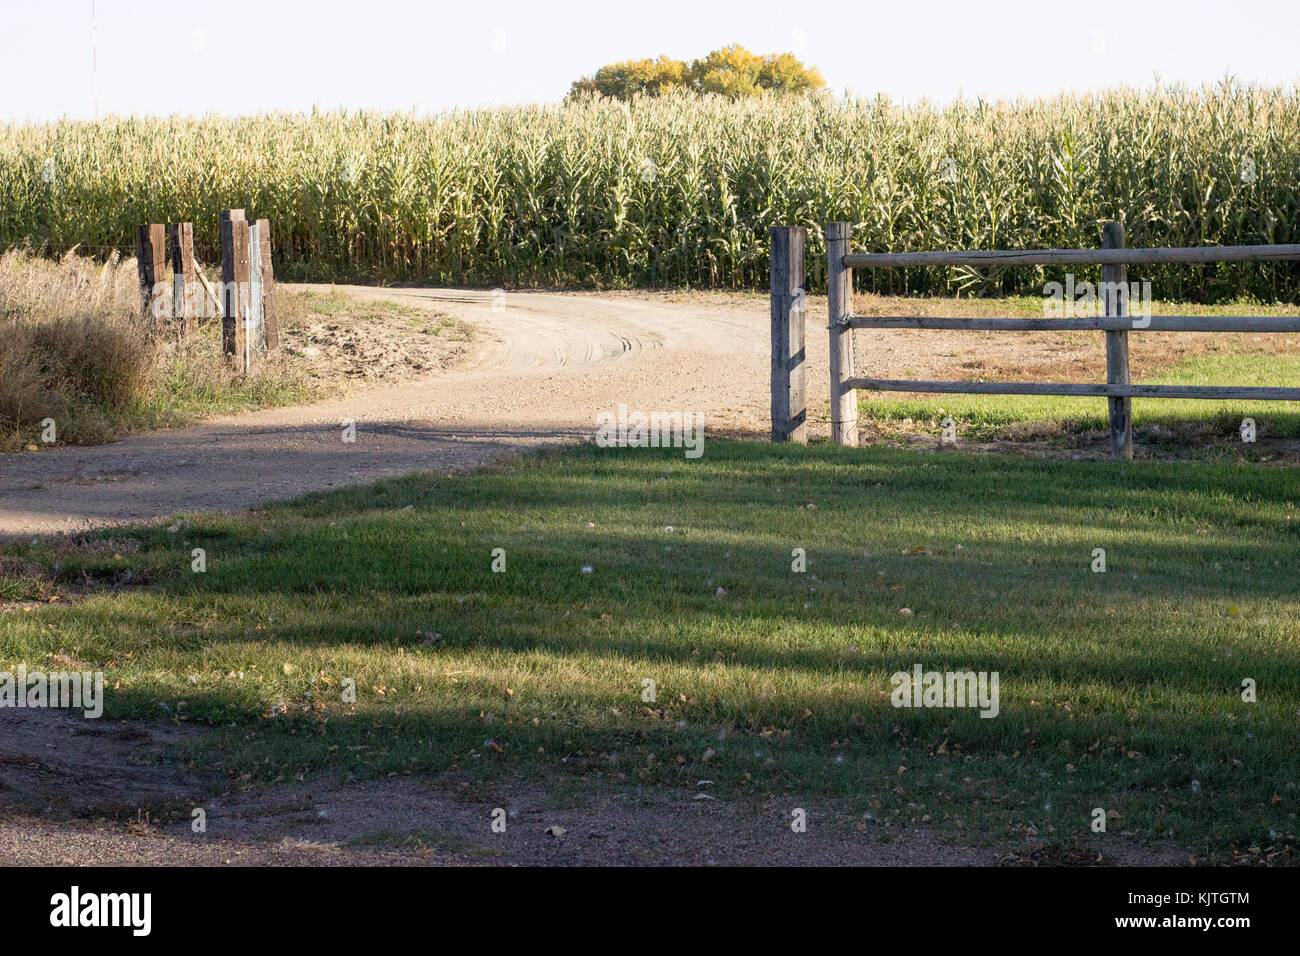 Paisaje de maíz presentó rodeado por una valla de madera desgastada en una sun lit granja y camino de tierra Foto de stock